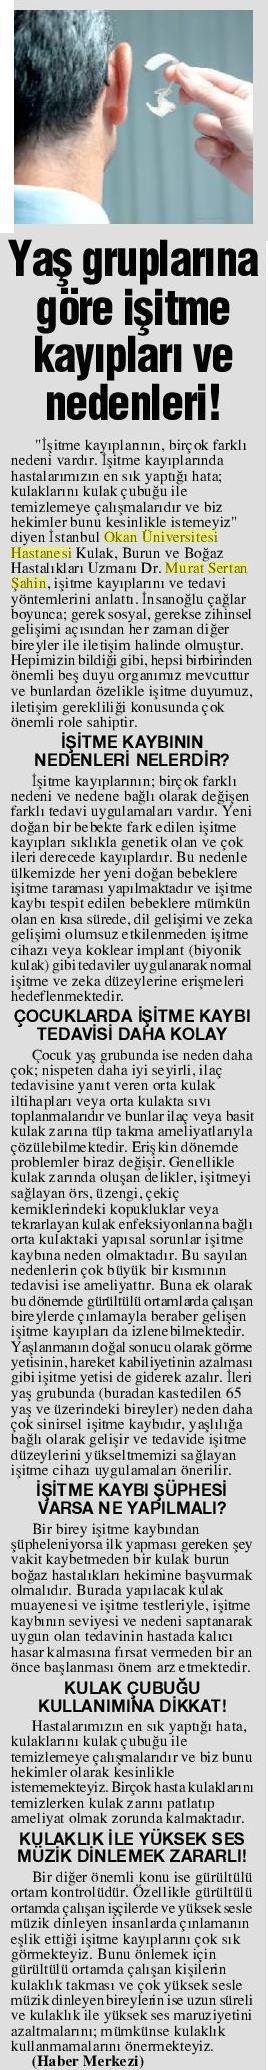 02.03.2019	Konya Postası	İŞİTME KAYIPLARI VE NEDENLERİ!